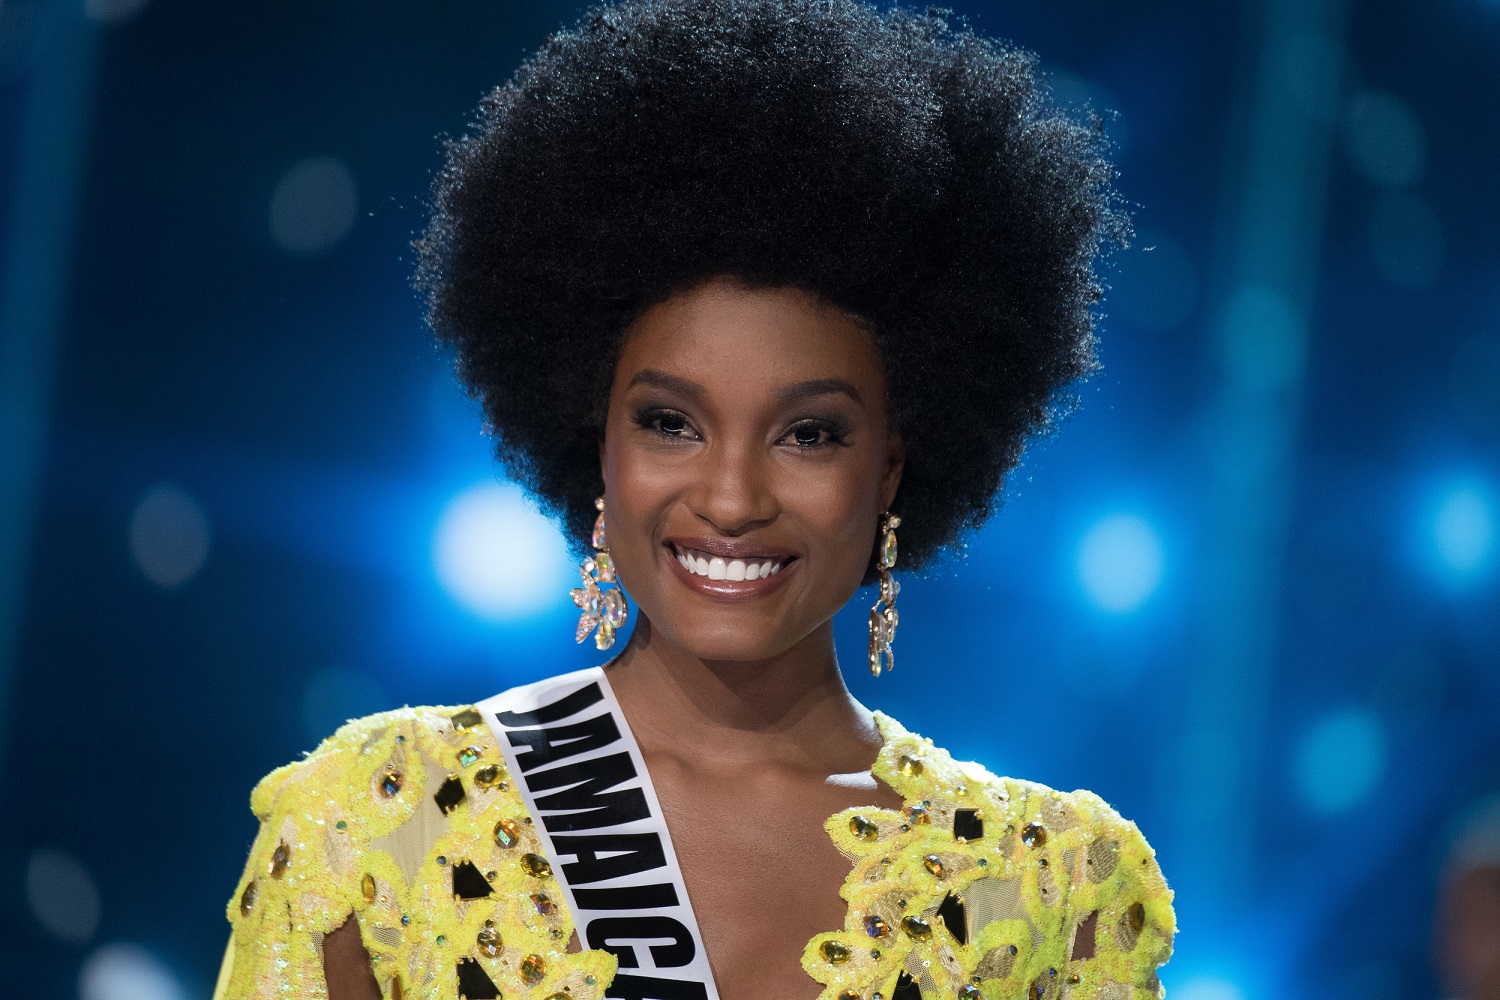 Miss Universe Jamaica 2017 Davina Bennett.